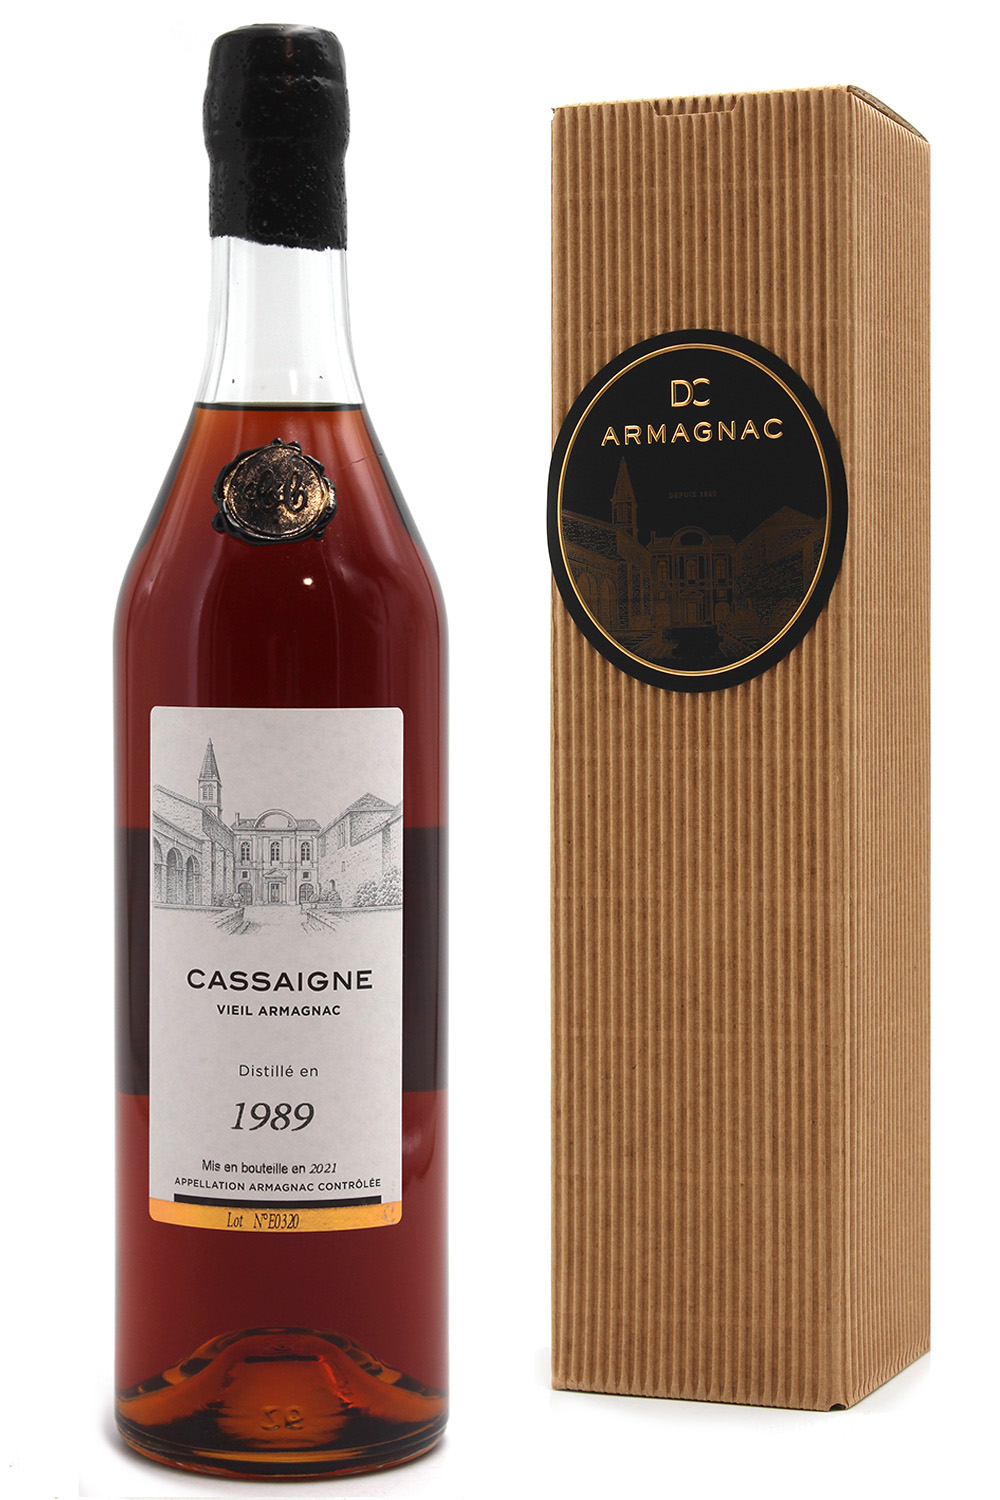 Armagnac cassaigne 1989